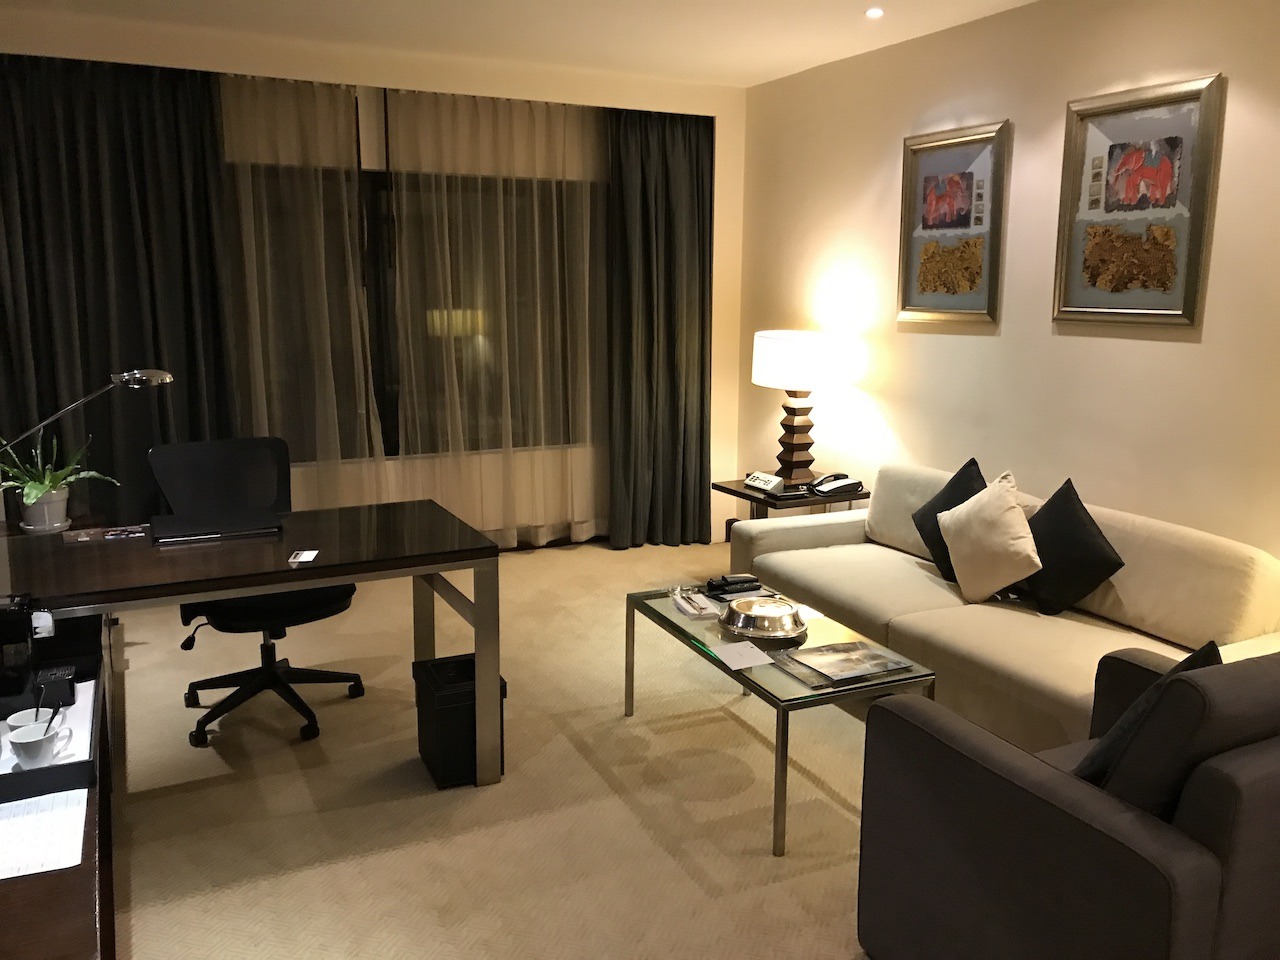 JW Marriott suite living room